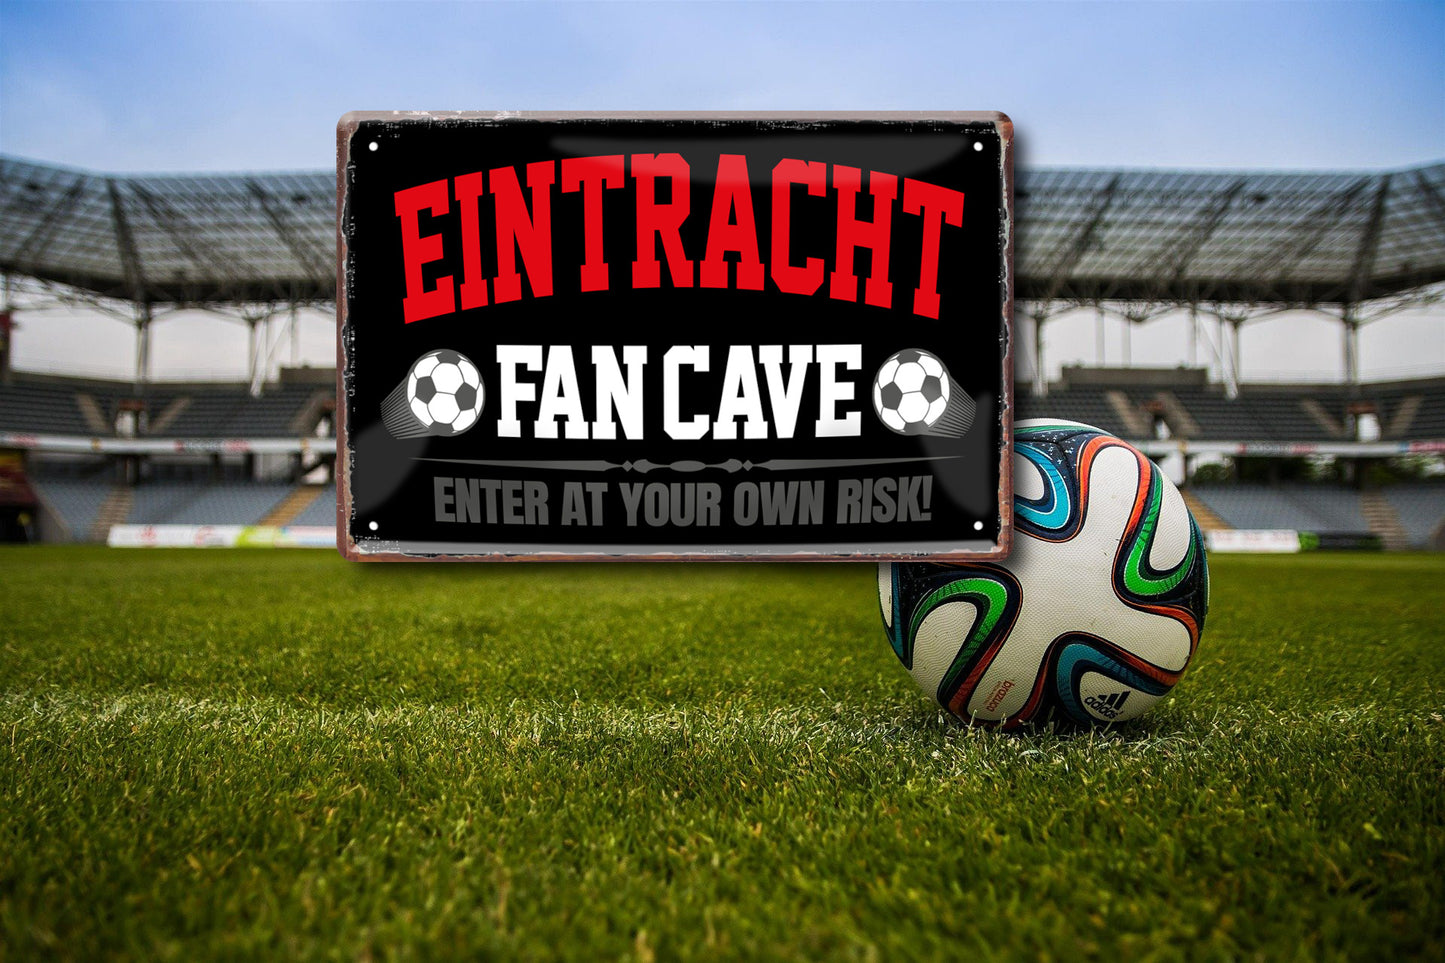 Tin sign "Eintracht Fan Cave" 20x30cm